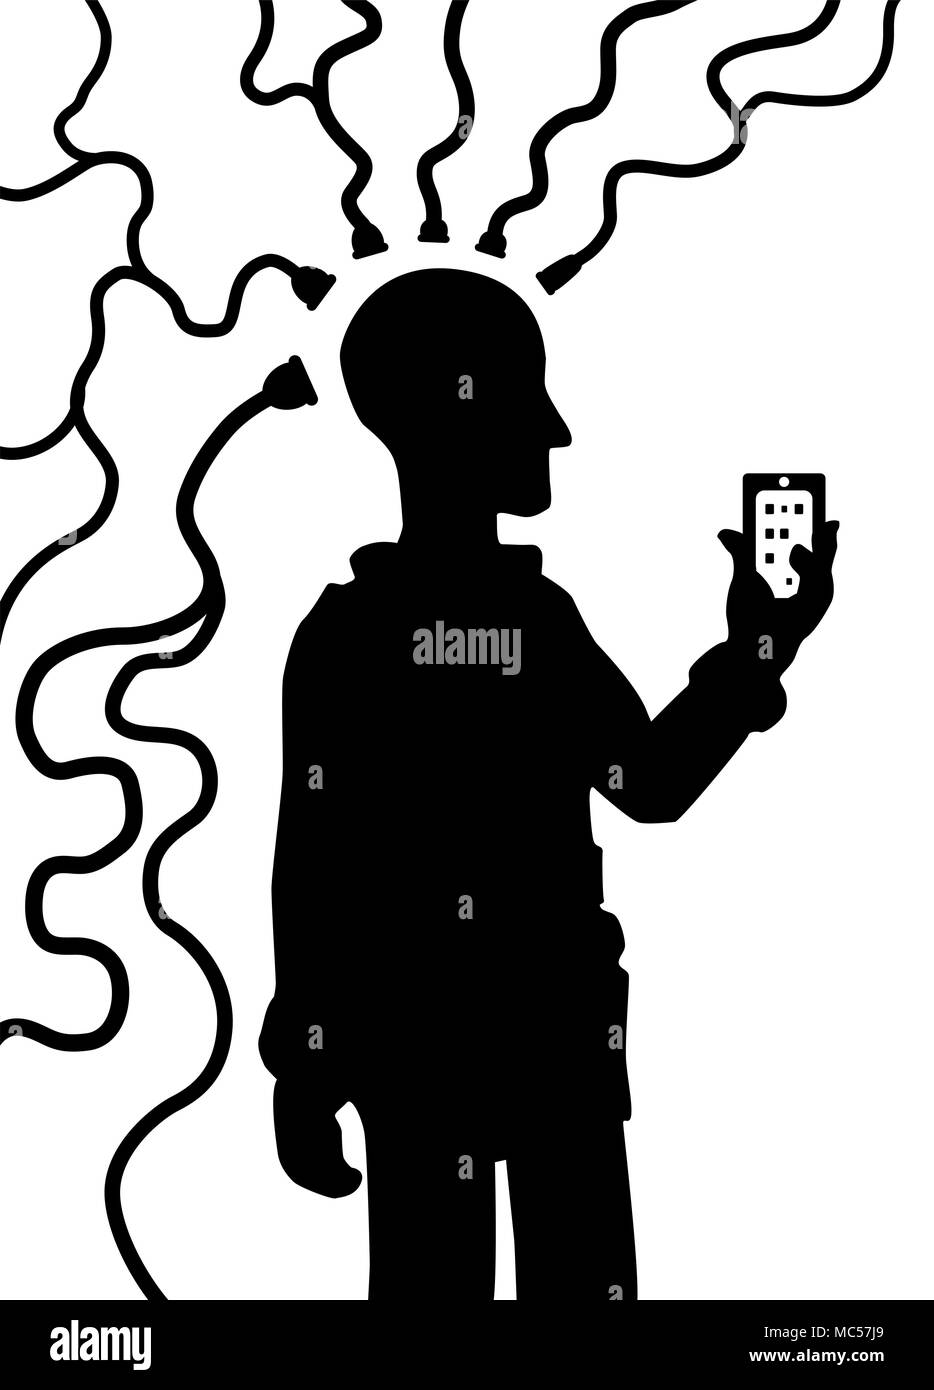 Dispositivo cuenta conectar persona silueta negra, ilustración vectorial, vertical, aislado sobre blanco Ilustración del Vector